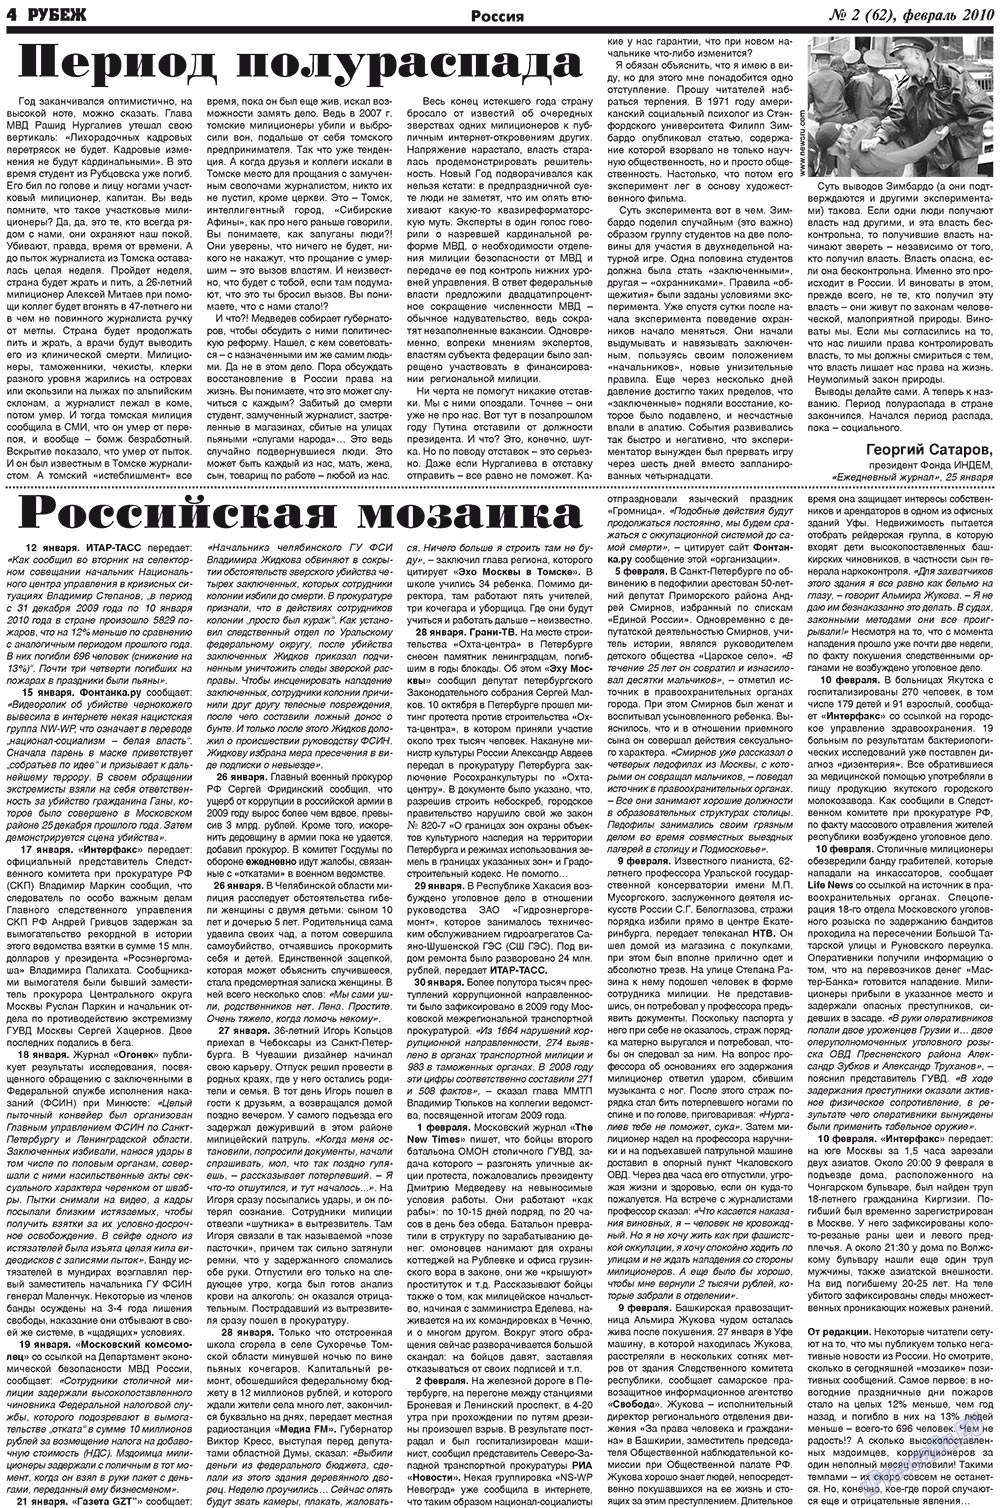 Рубеж (газета). 2010 год, номер 2, стр. 4